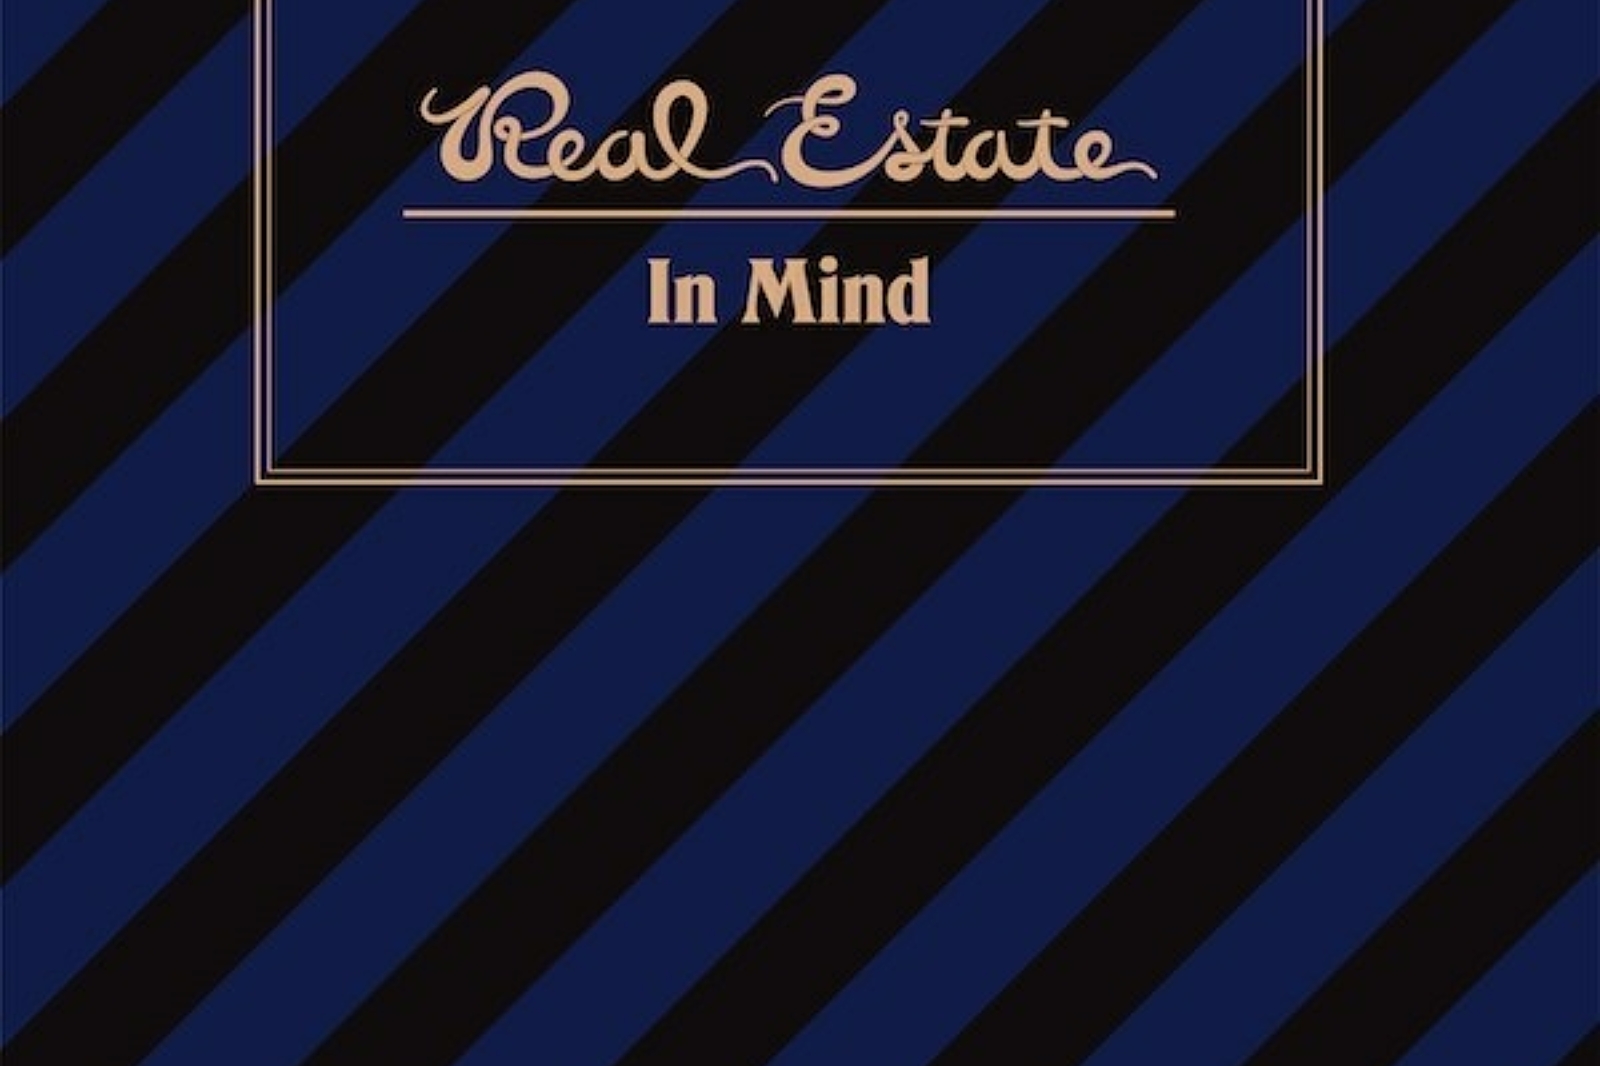 Real Estate - In Mind